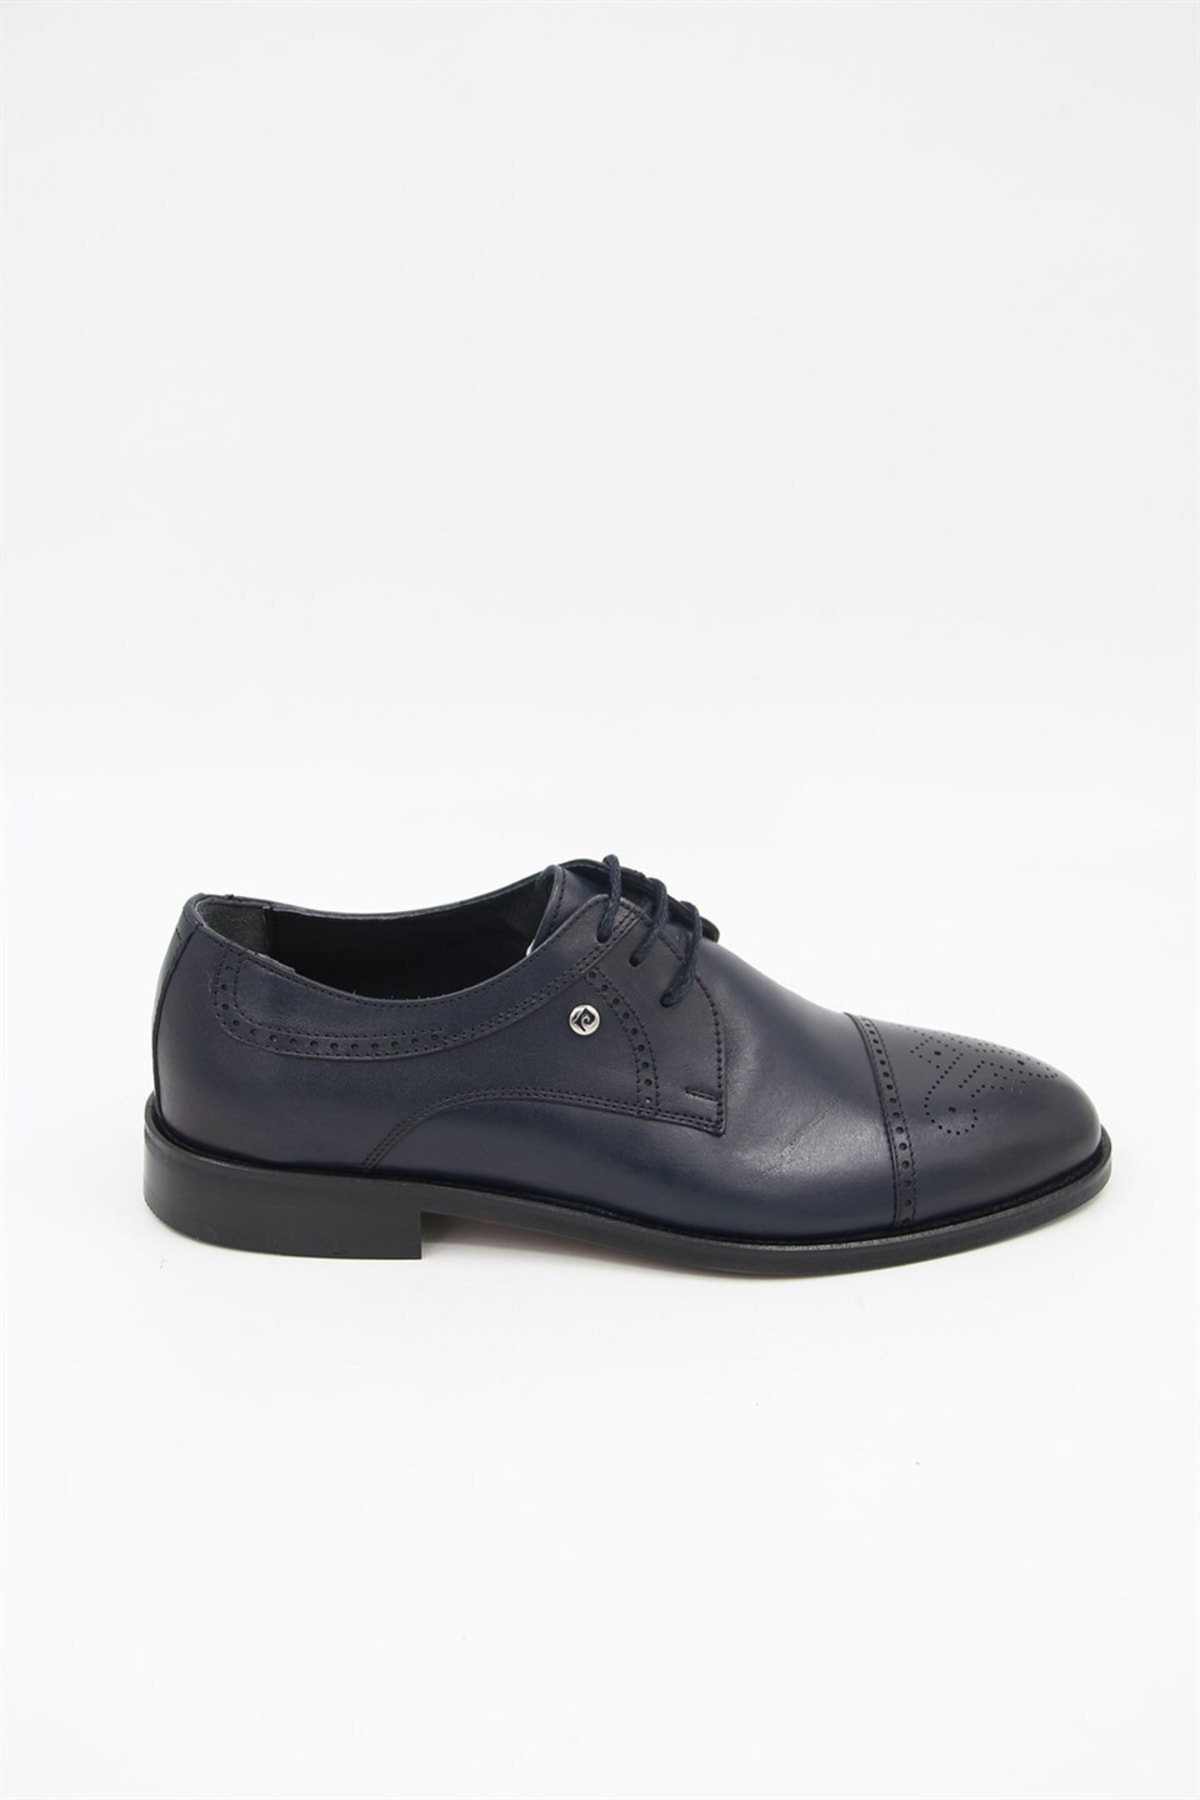 Pierre Cardin 63505 Erkek Klasik Ayakkabı